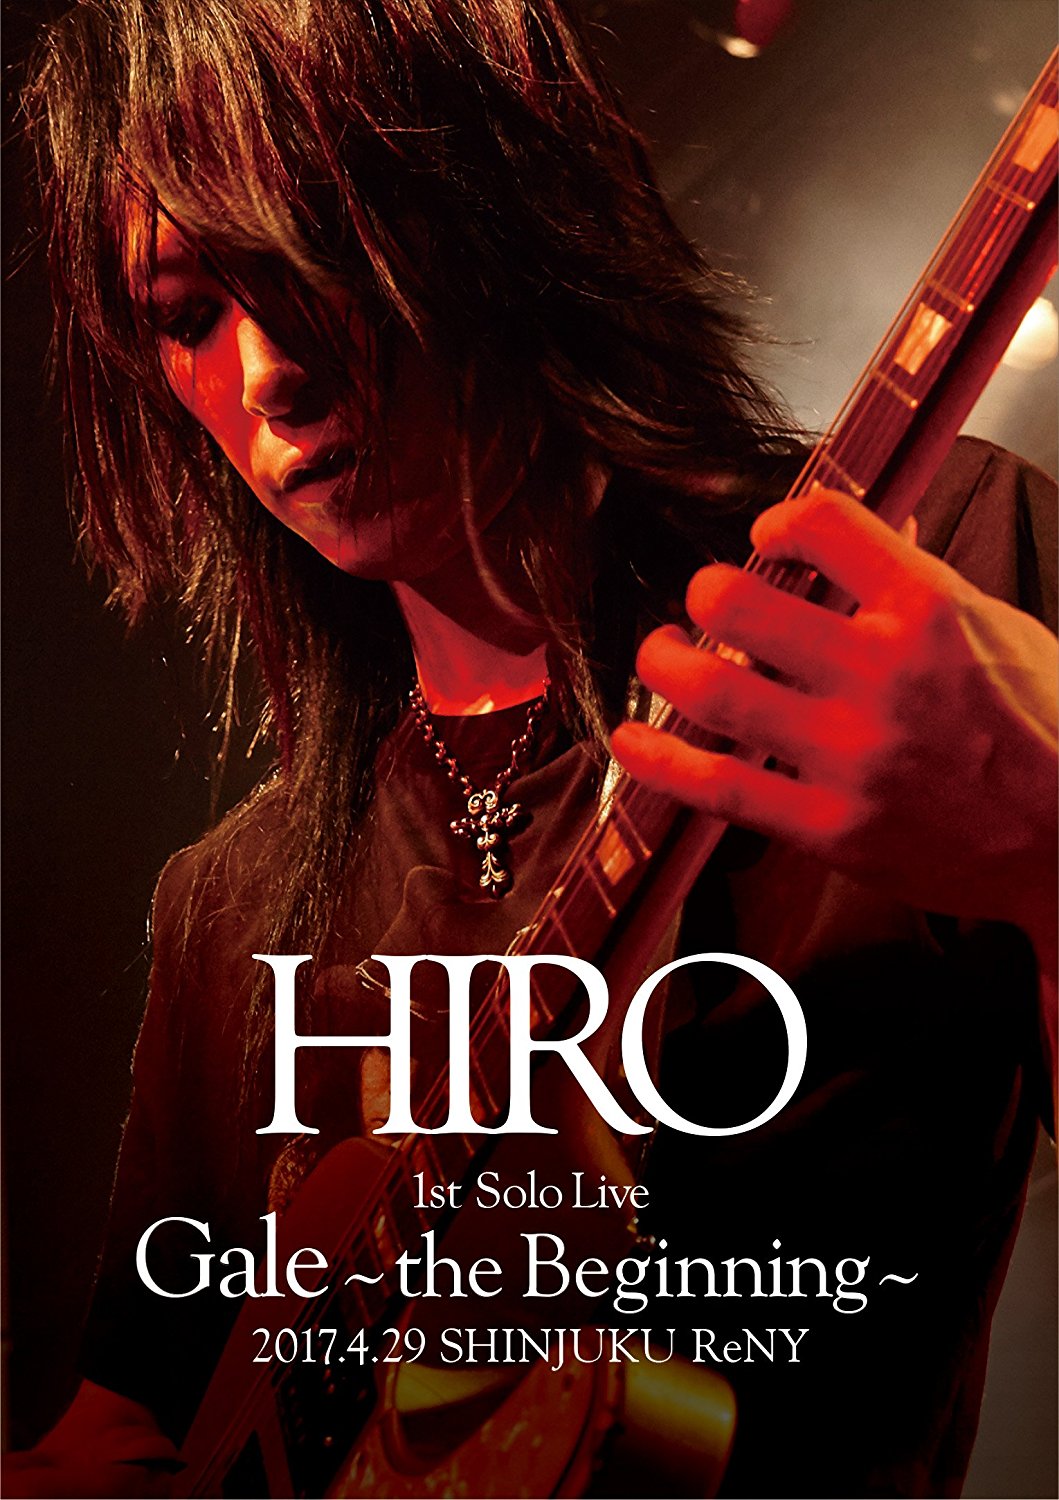 HIRO ( ヒロ )  の CD 【初回DVD】HIRO 1st Solo Live 『Gale』~the Beginning~ 2017.4.29 SHINJUKU ReNY